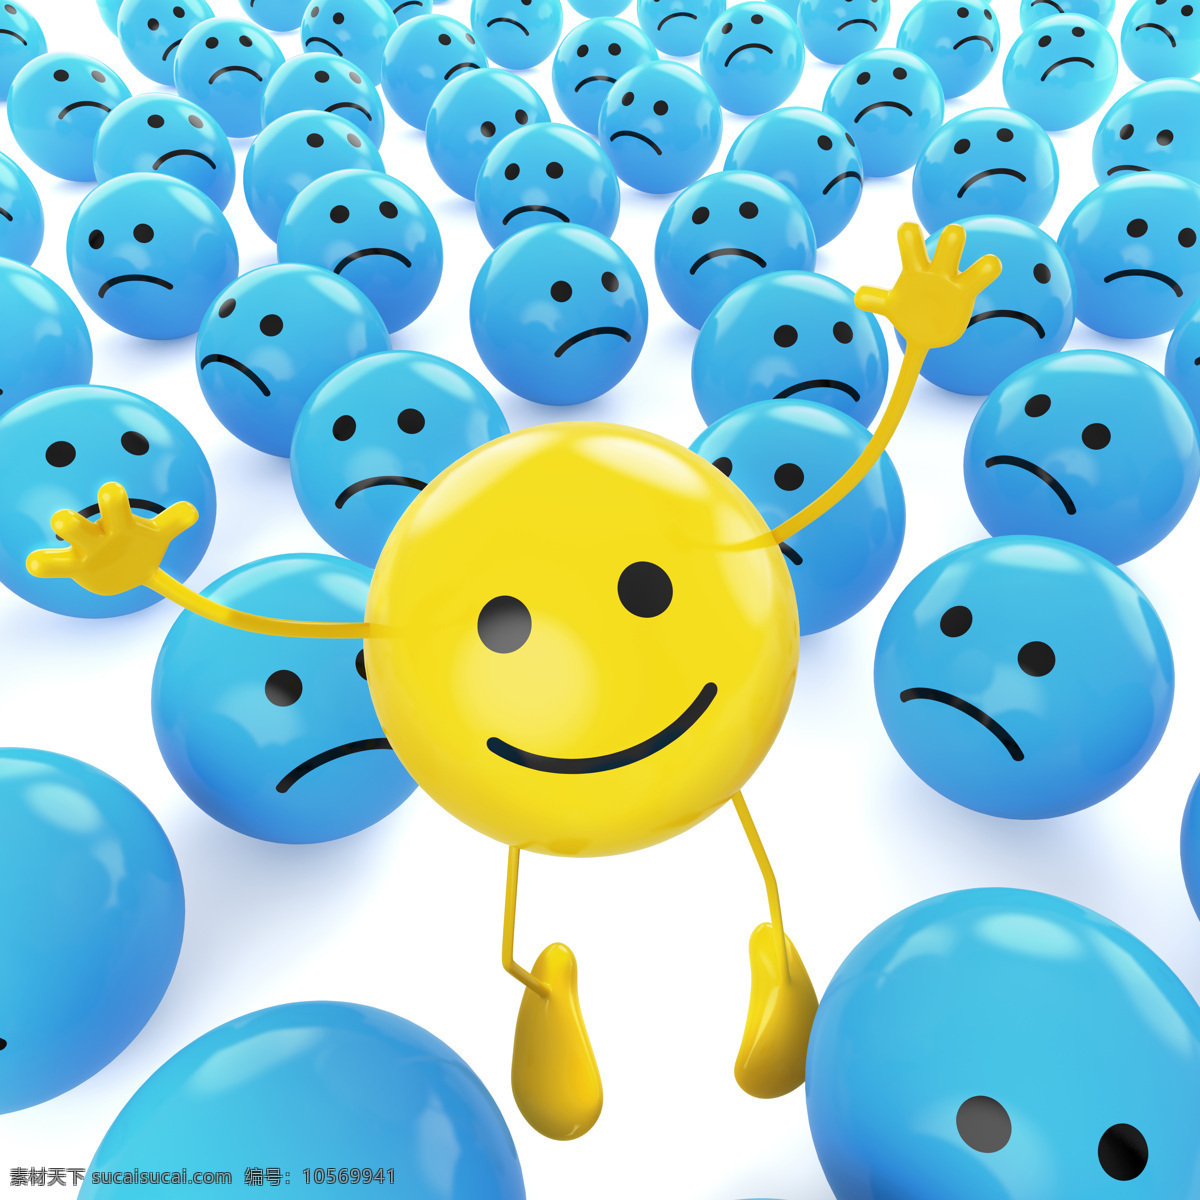 微笑气球 物品 气球 微笑 黄色气球 蓝色气球 悲哀 其他类别 生活百科 青色 天蓝色